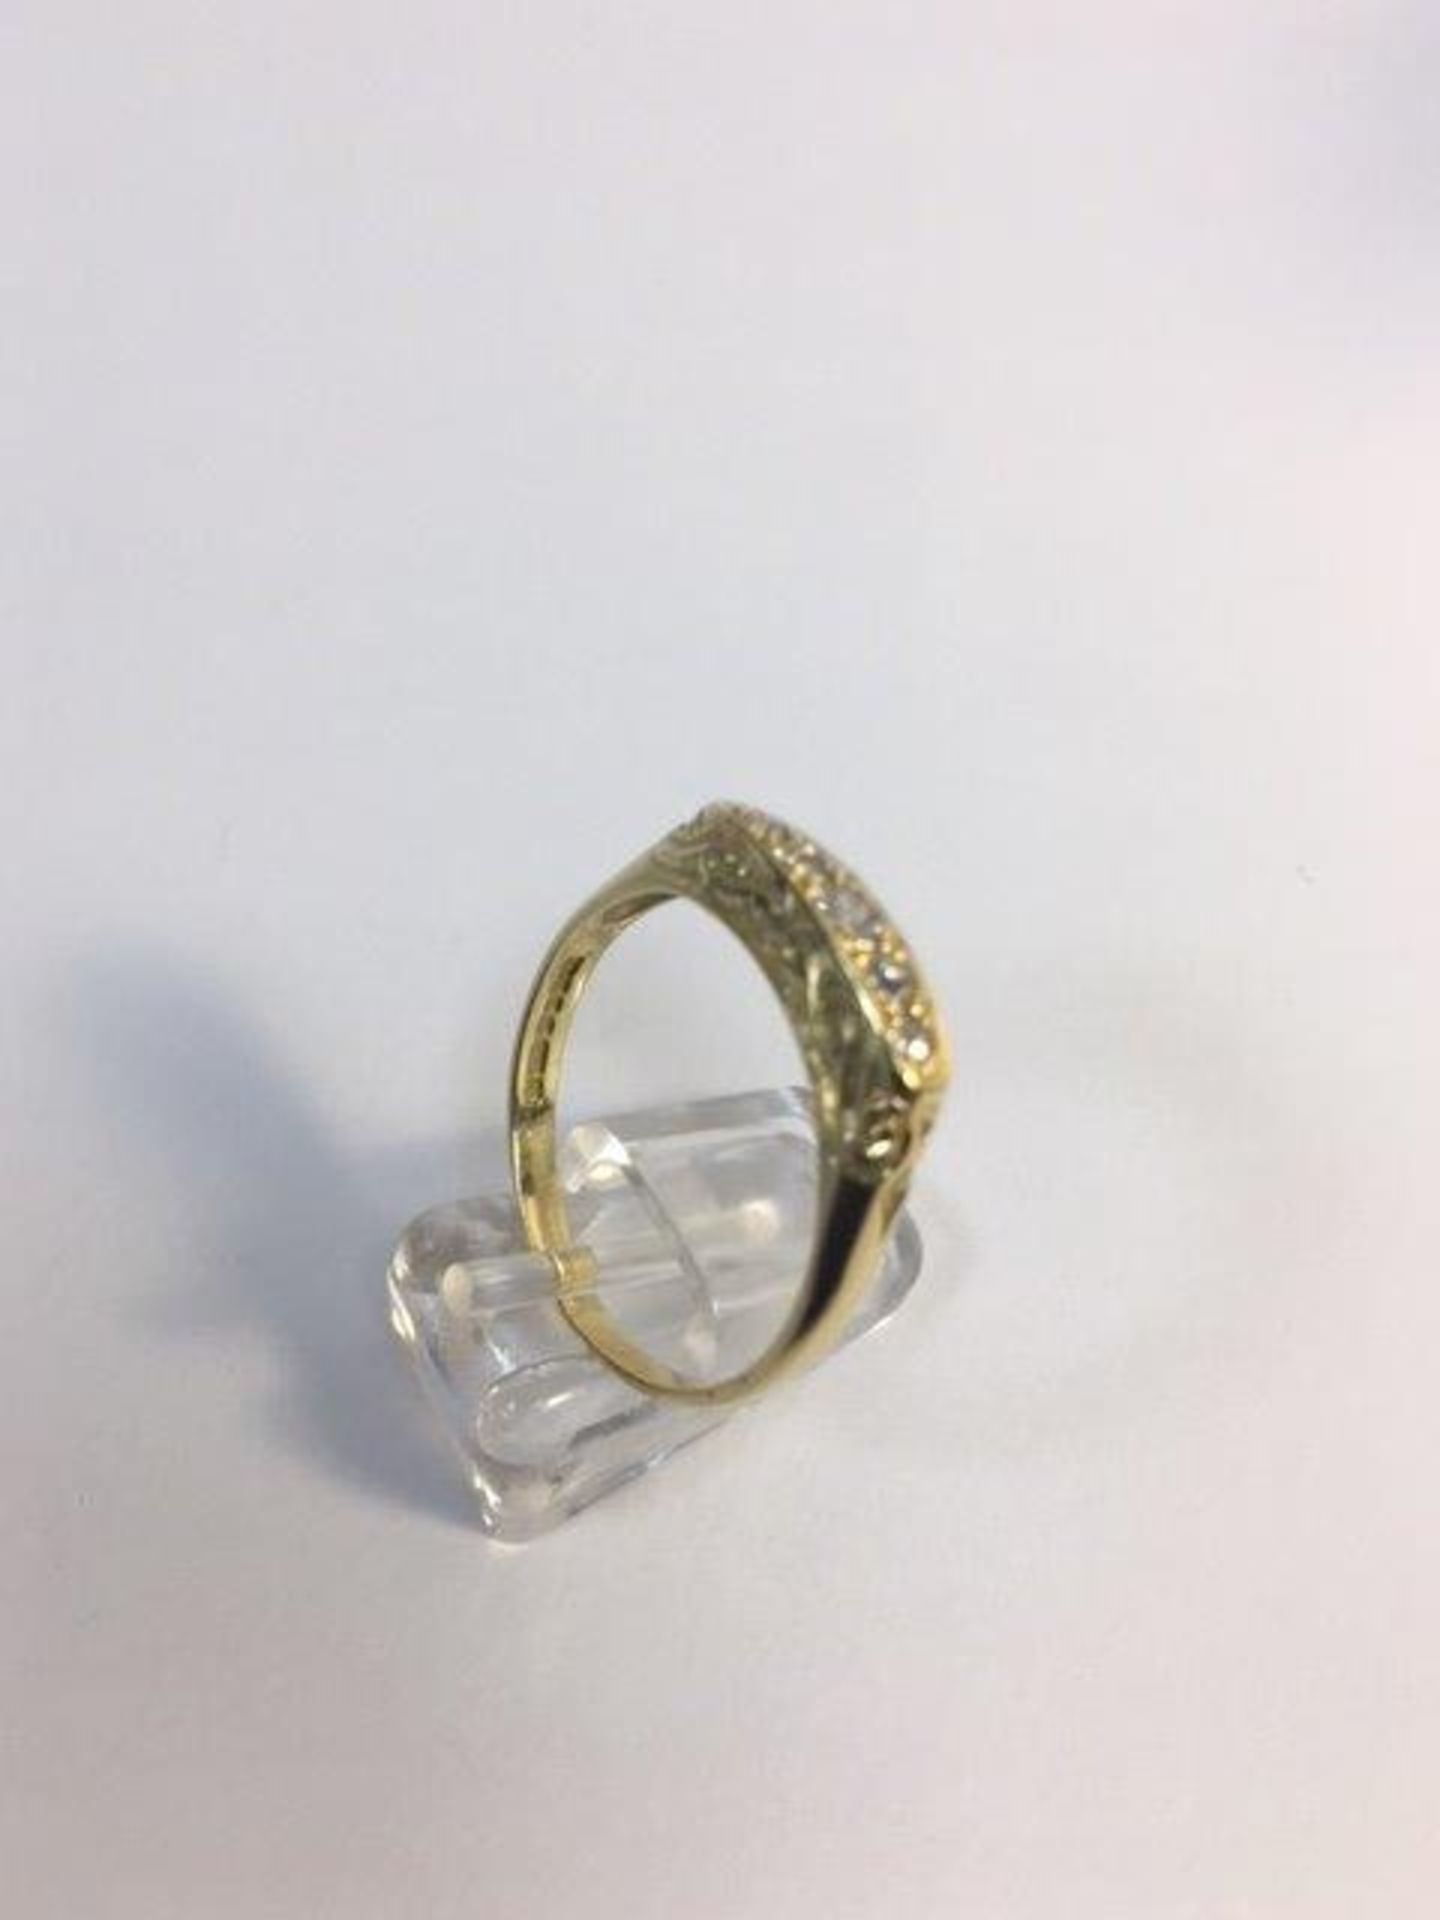 Edwardian 5 stone diamond decorative ring - Image 3 of 4